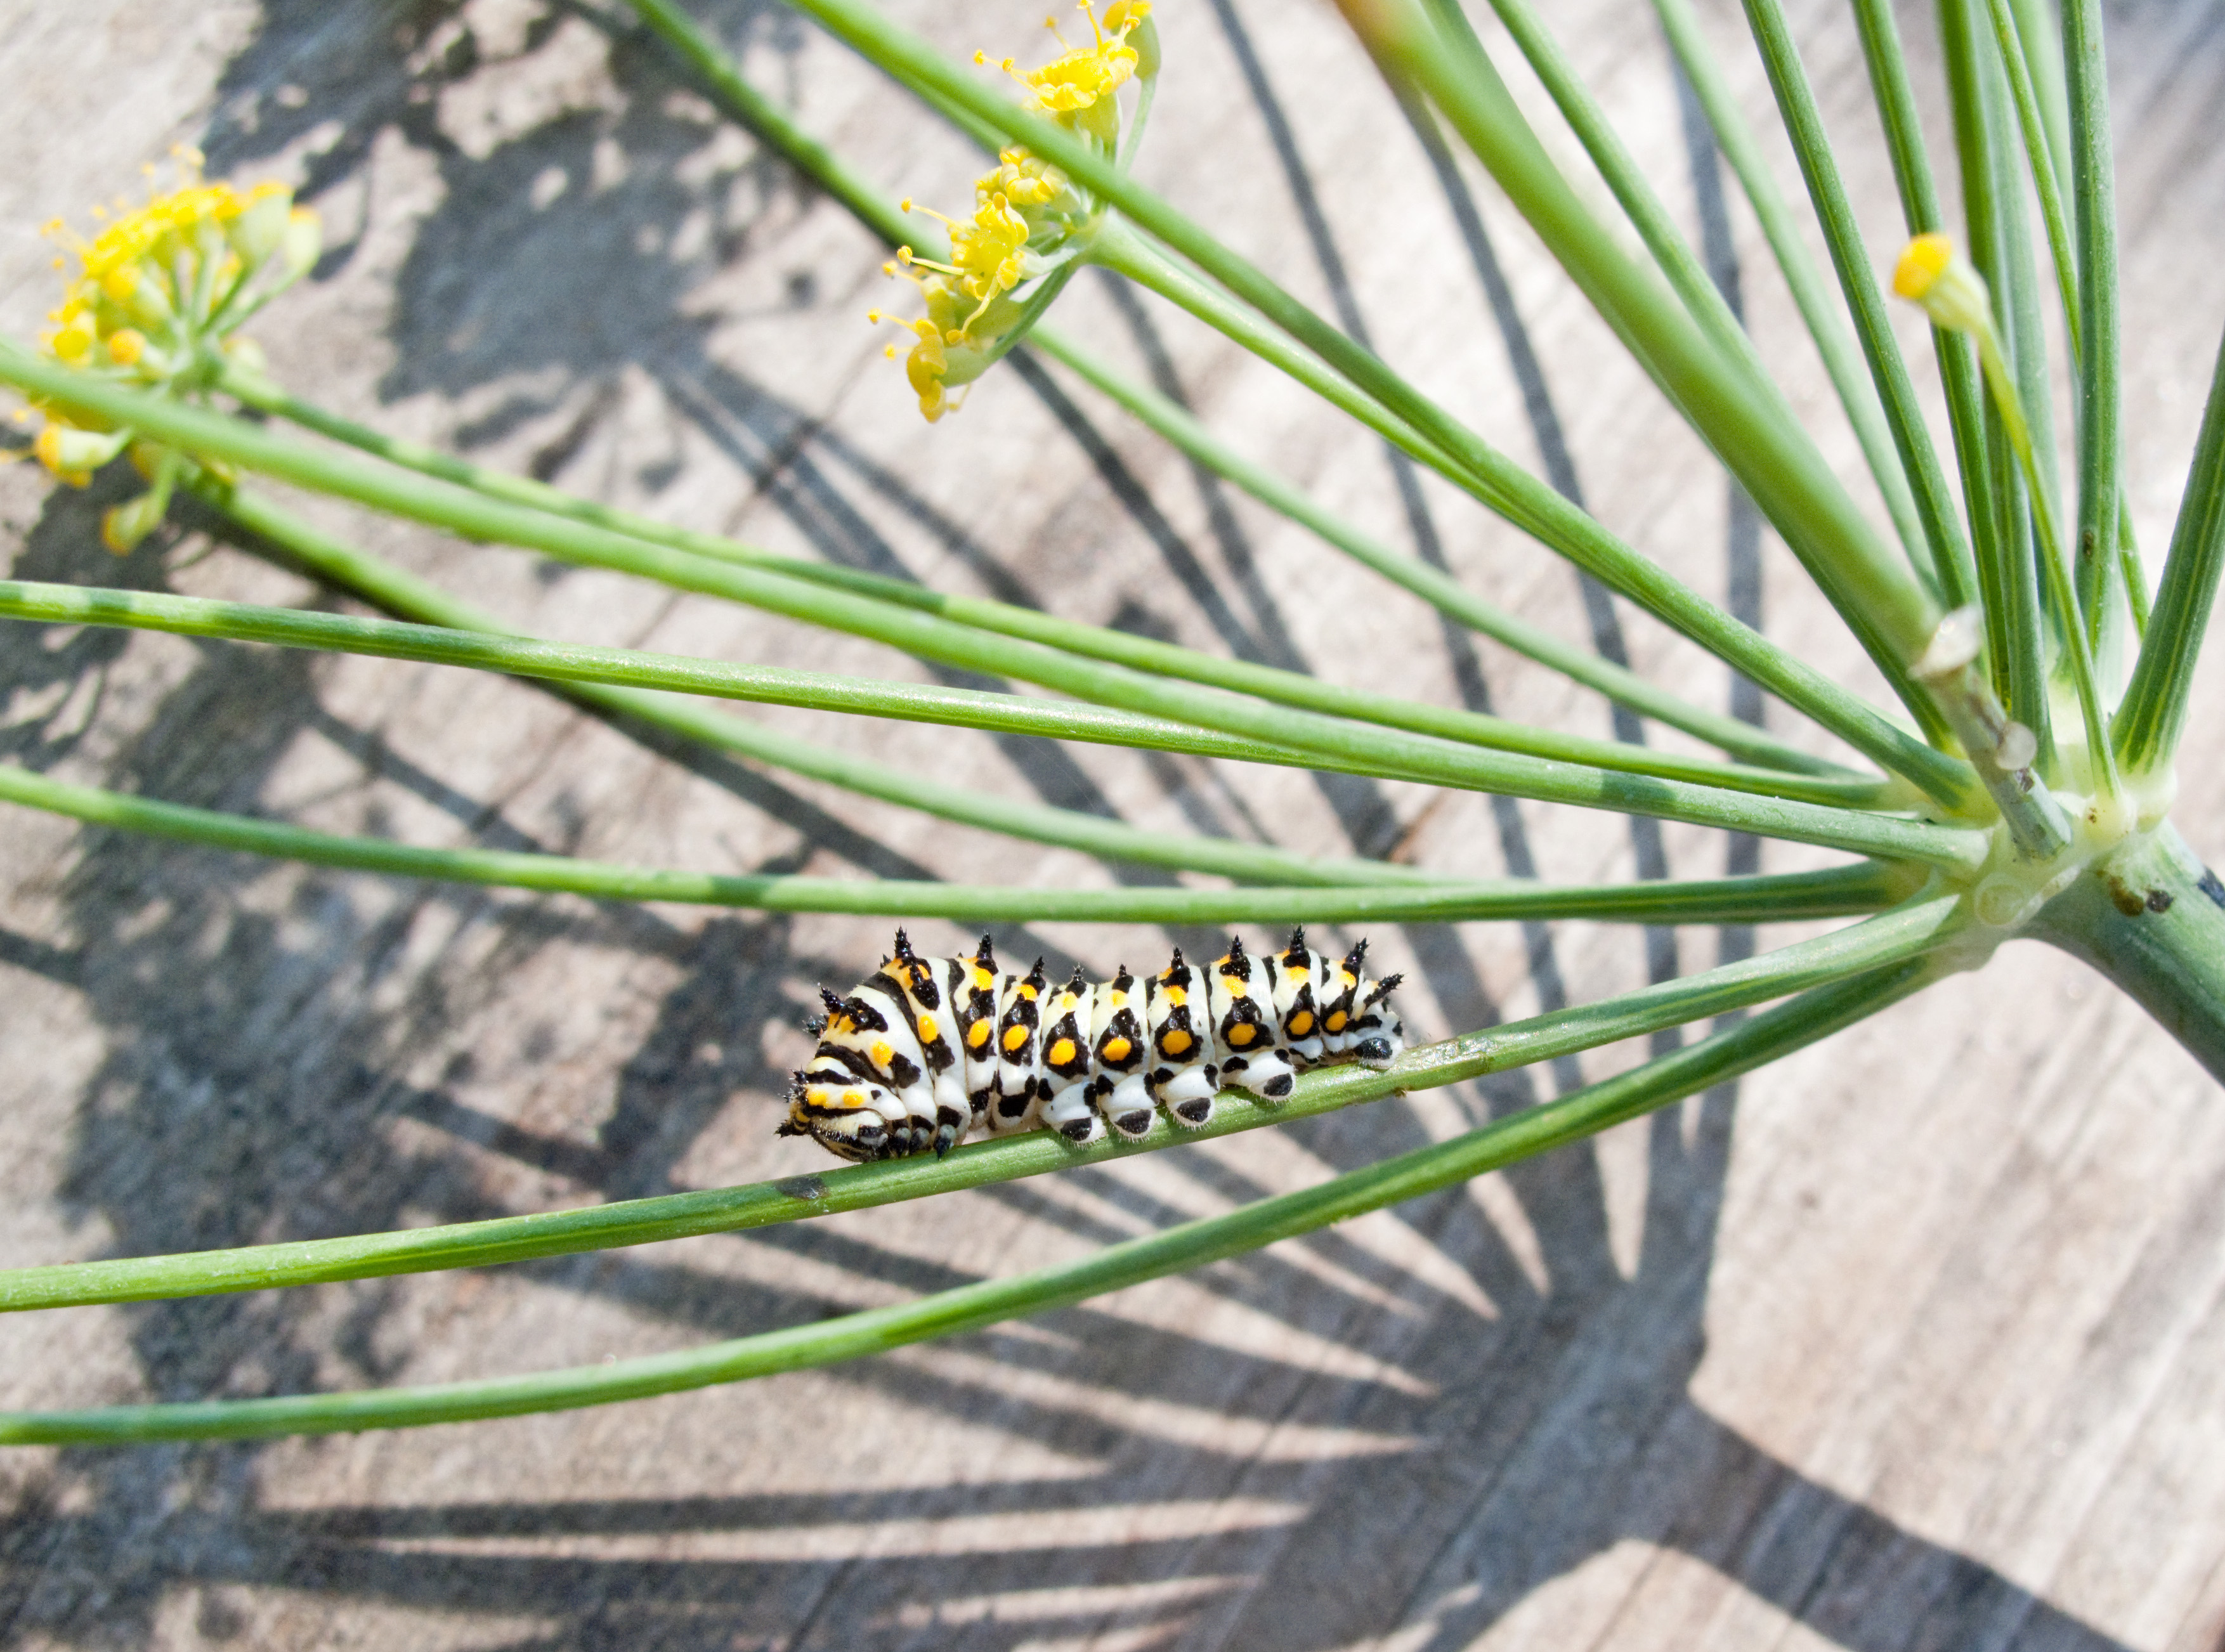 Papilio zelicaon caterpillar on fennel flower head